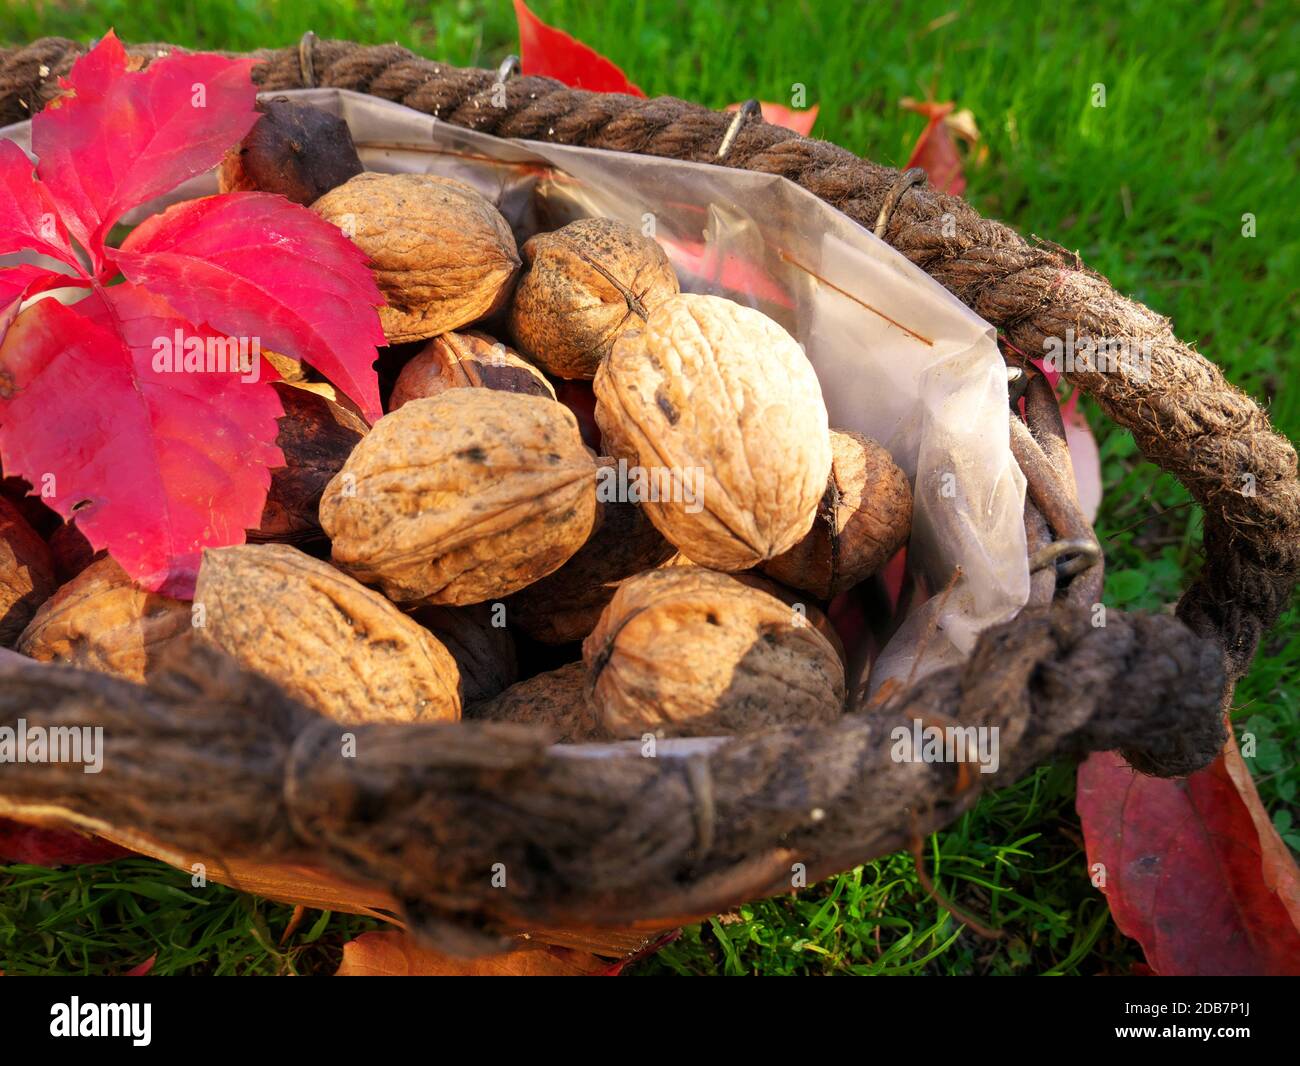 Cestino di frutta a guscio appena raccolto messo nell'erba con foglie rosse dell'autunno Foto Stock